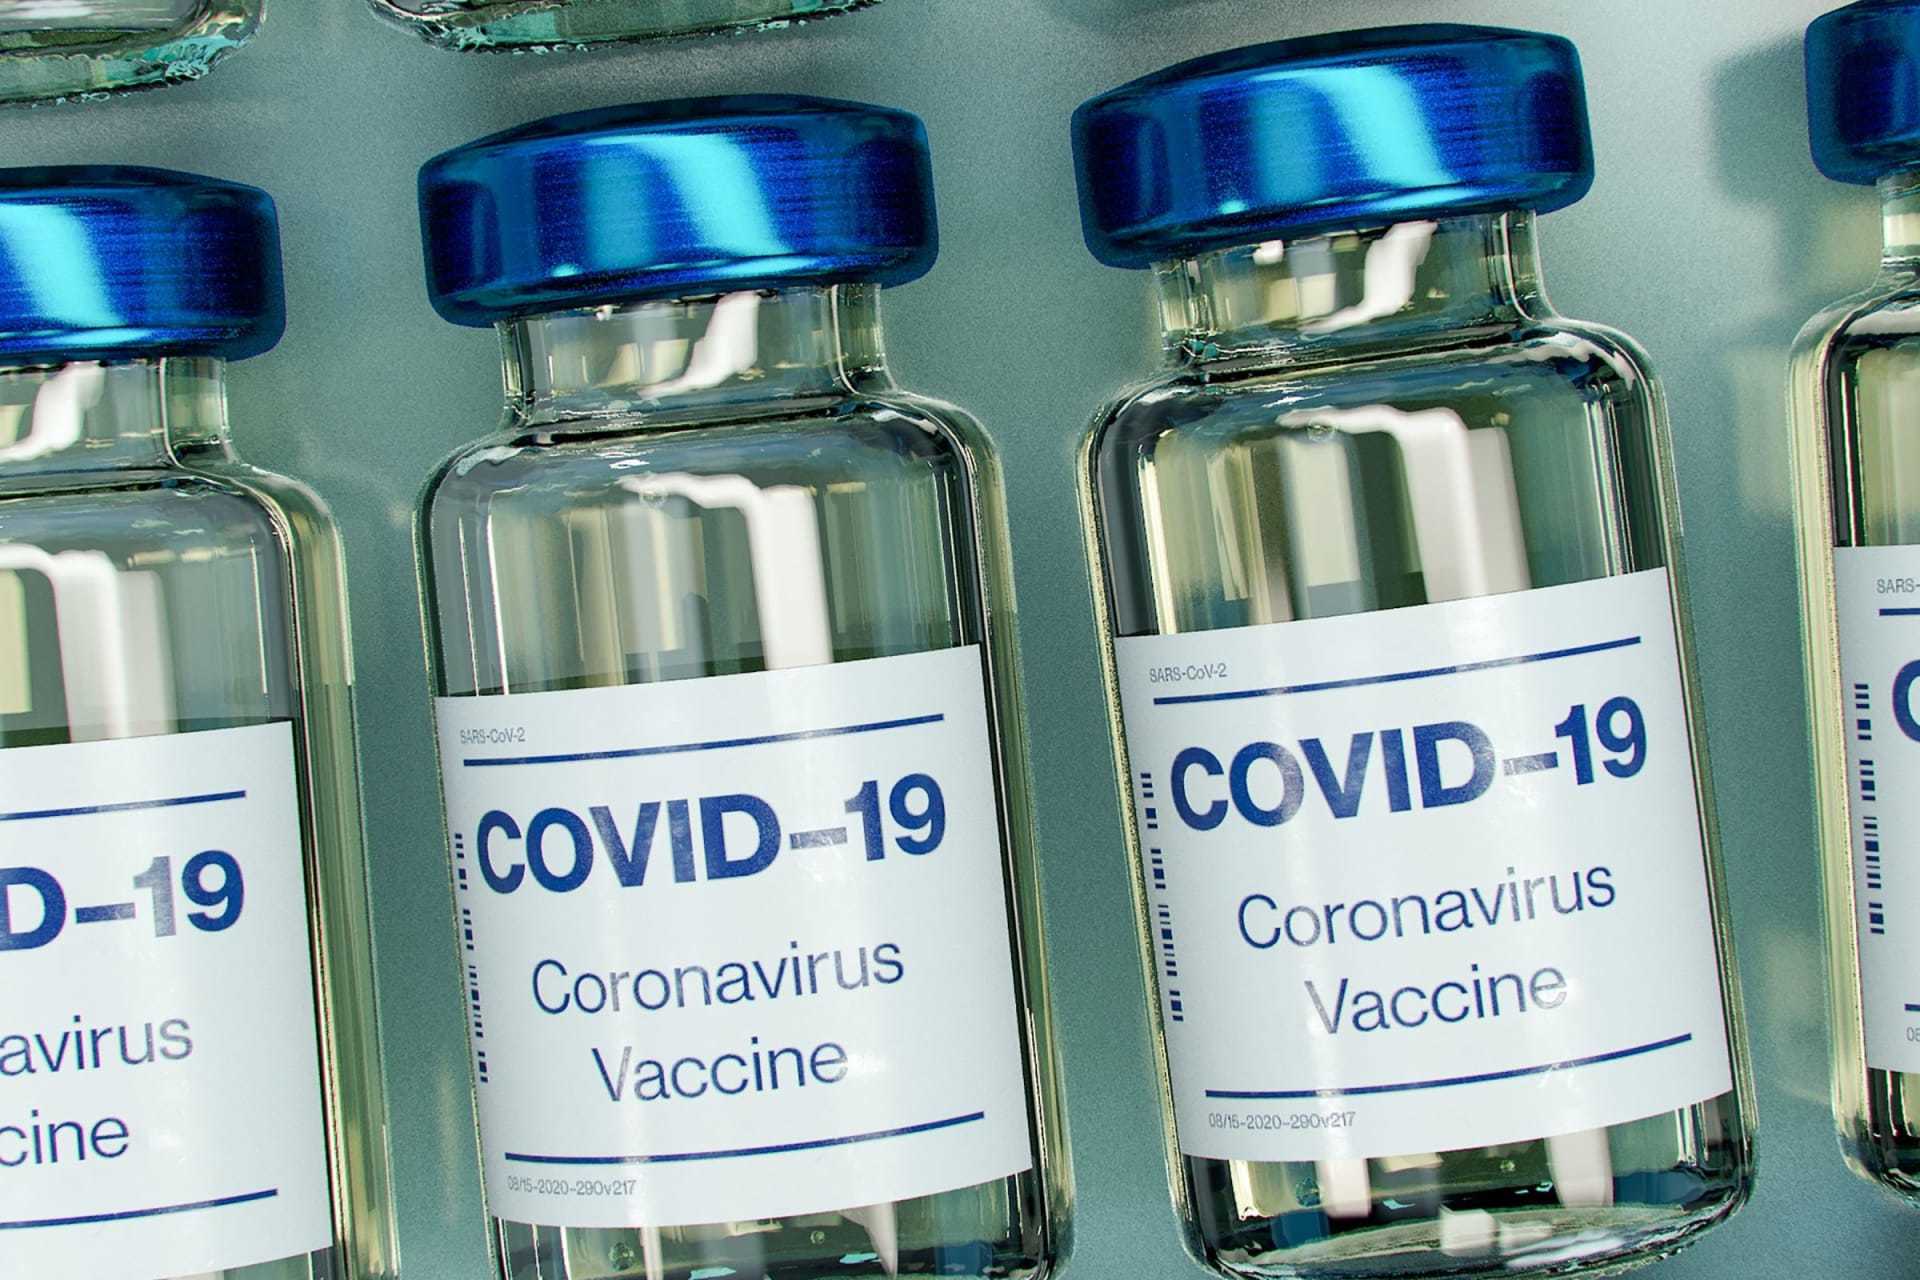 Covid-19 coronavirus vaccine